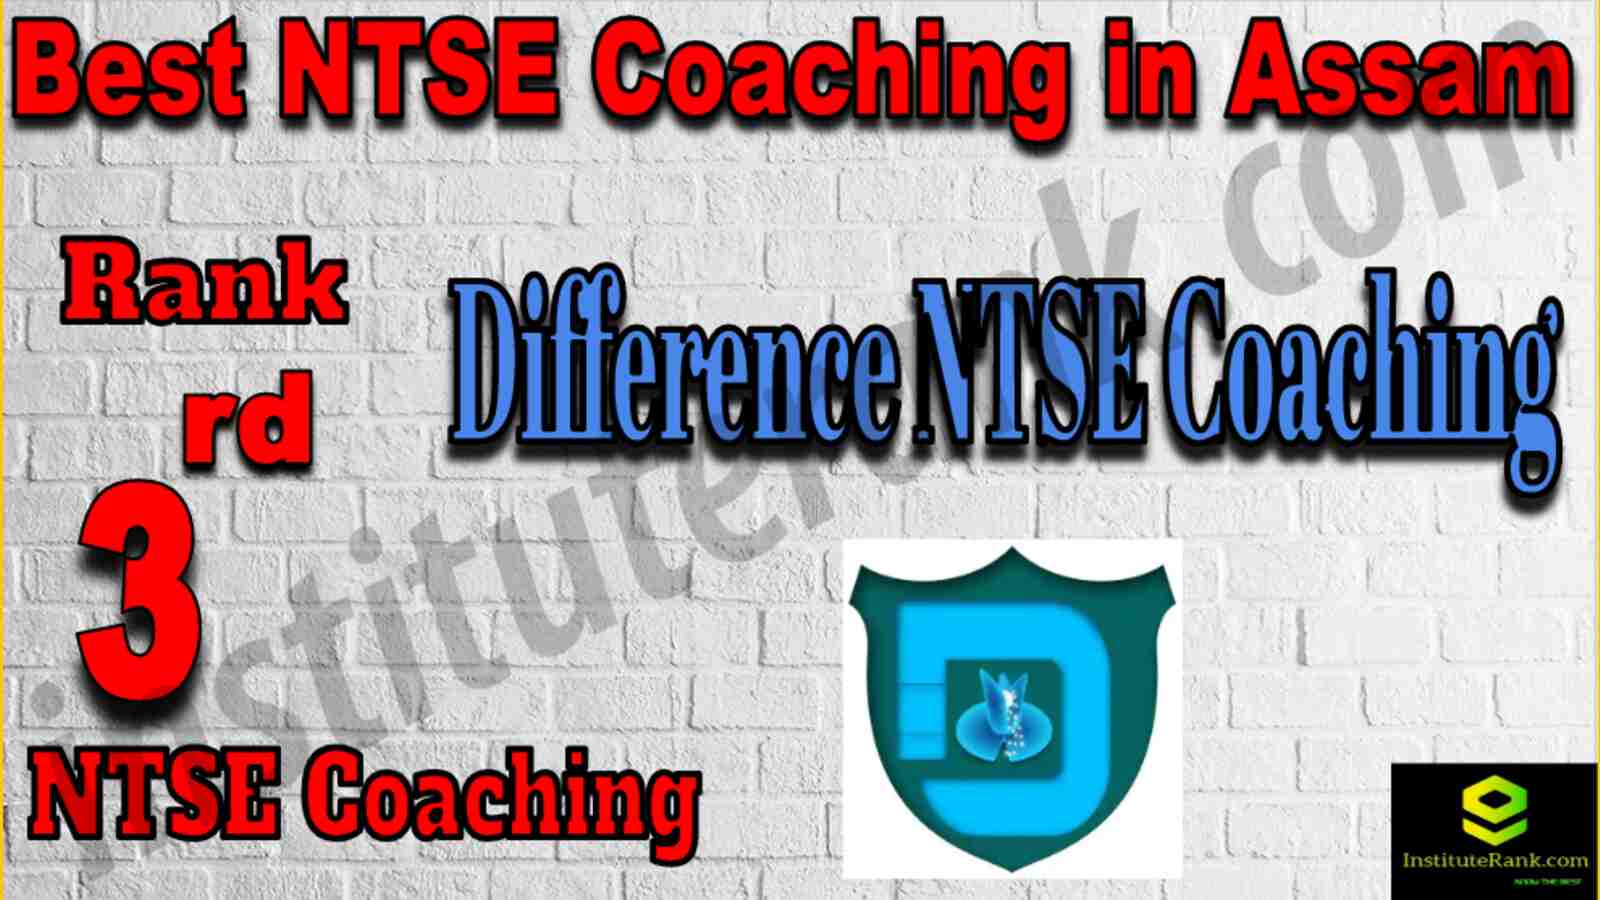 3rd Best NTSE Coaching in Assam